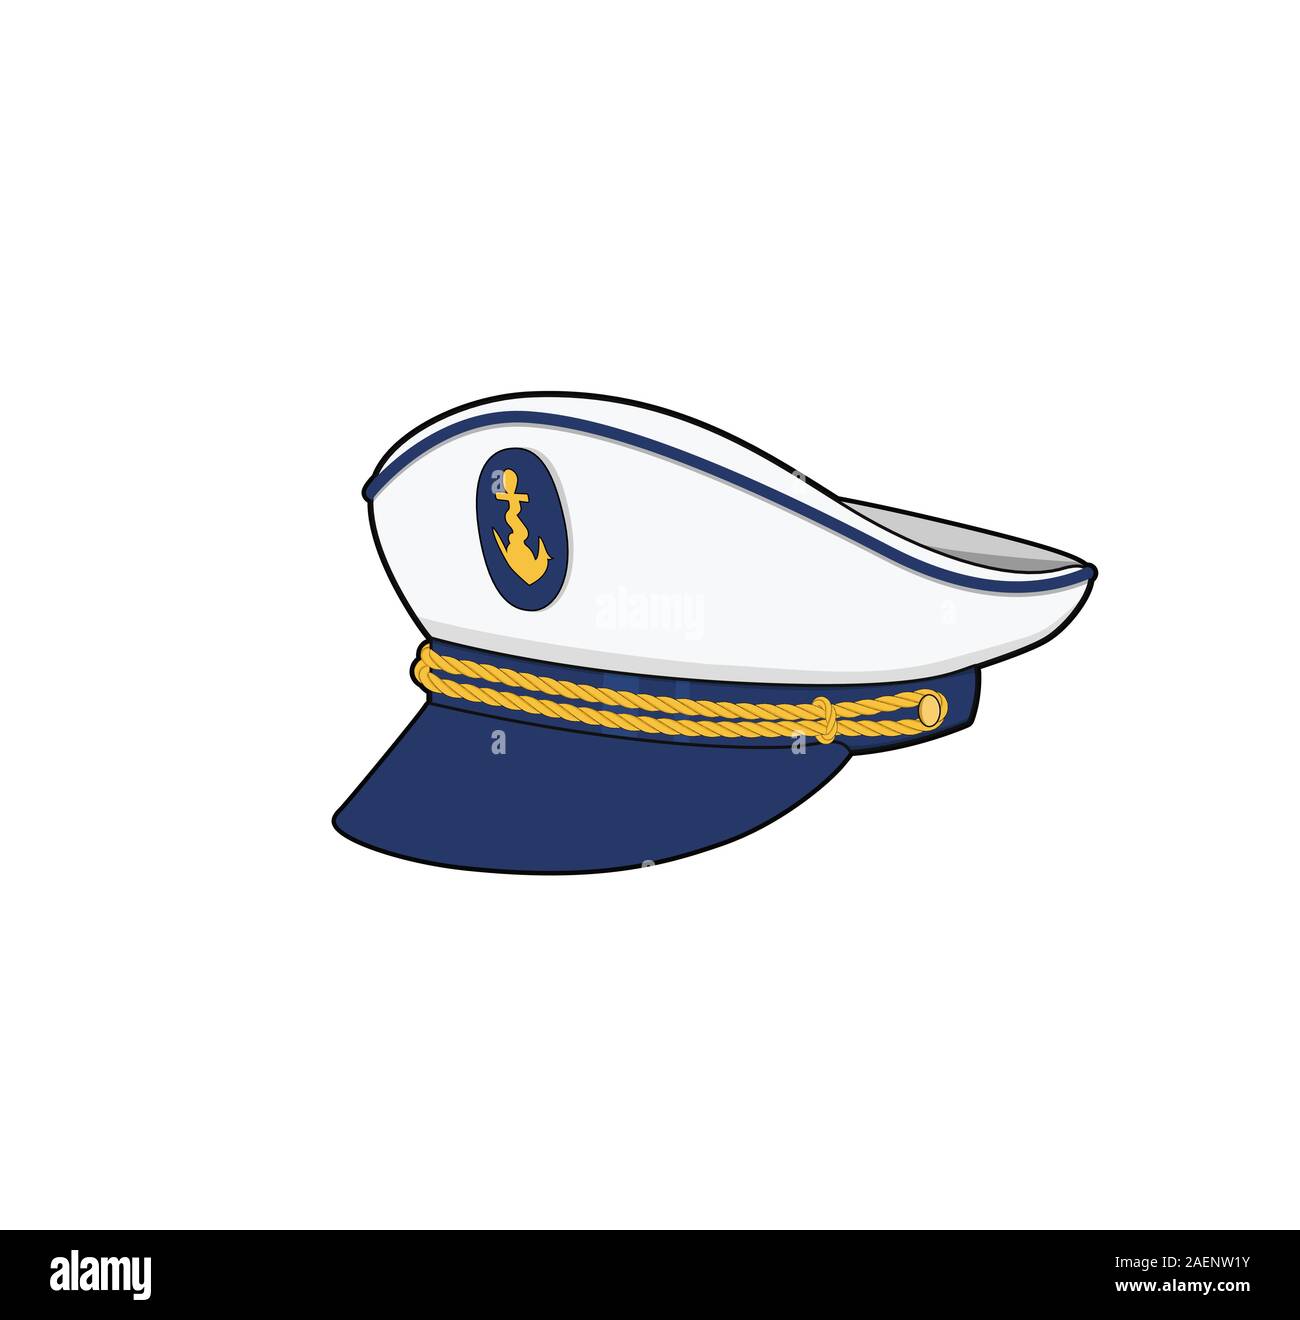 Le capitaine hat. Les forces de la mer le capitaine cap. Équipage de bateau, uniforme. Vector illustration. Illustration de Vecteur